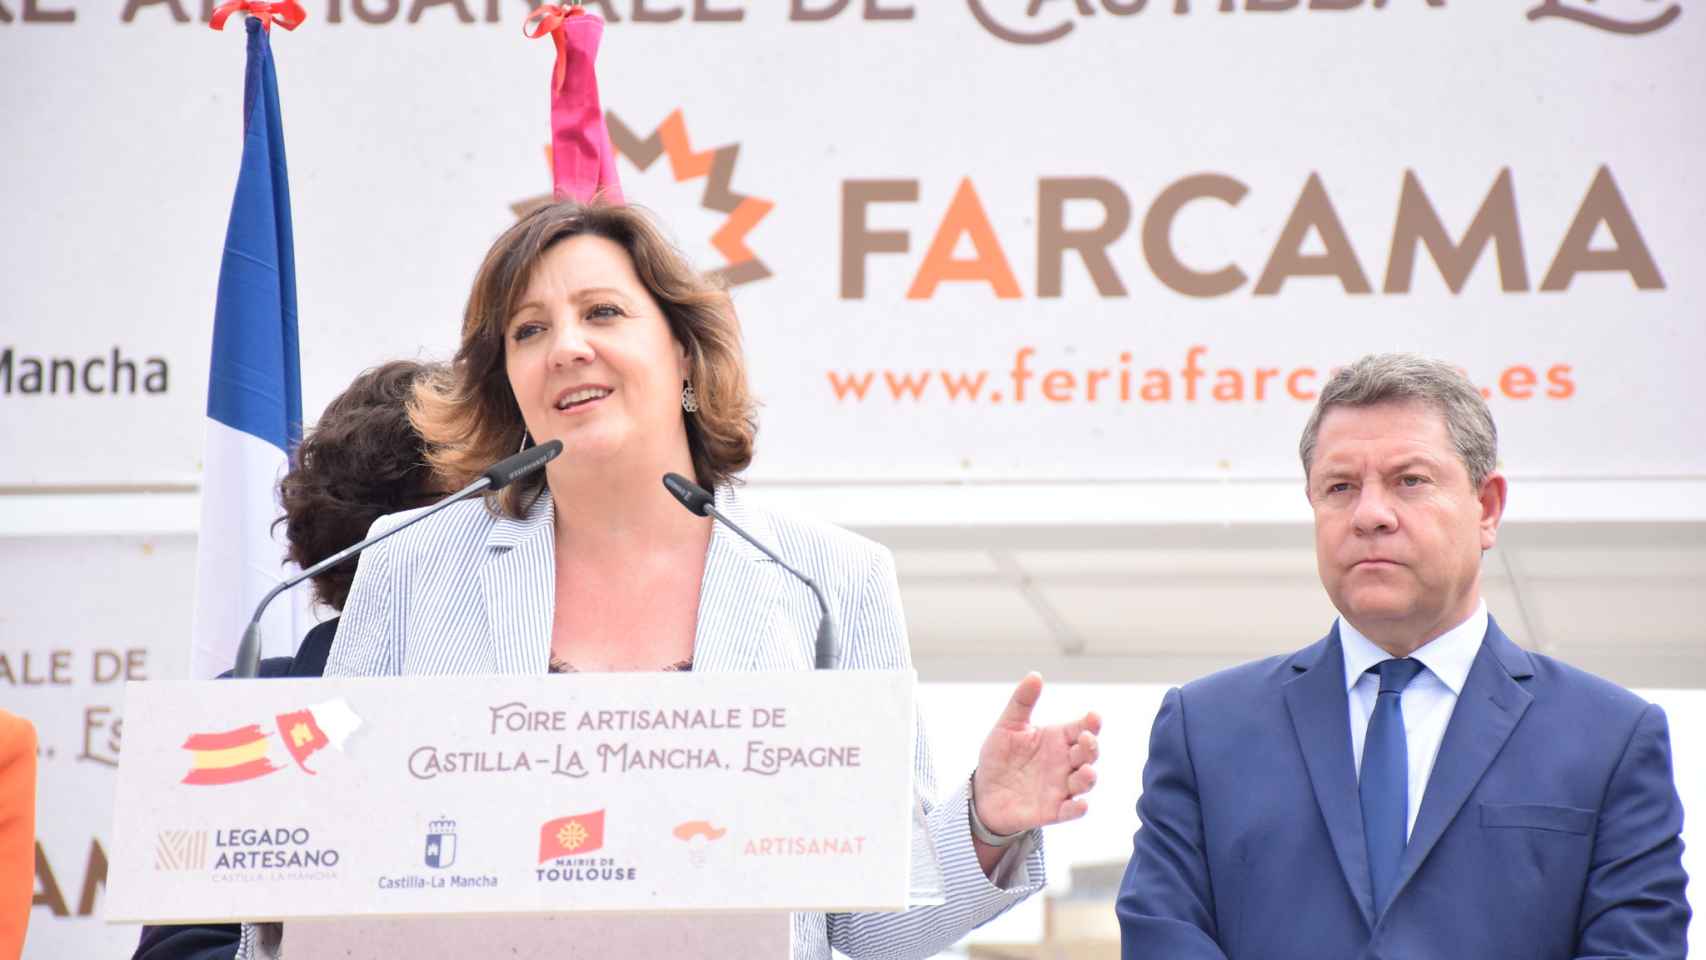 Patricia Franco en la edición de Farcama en Toulouse (Francia). Foto: JCCM.